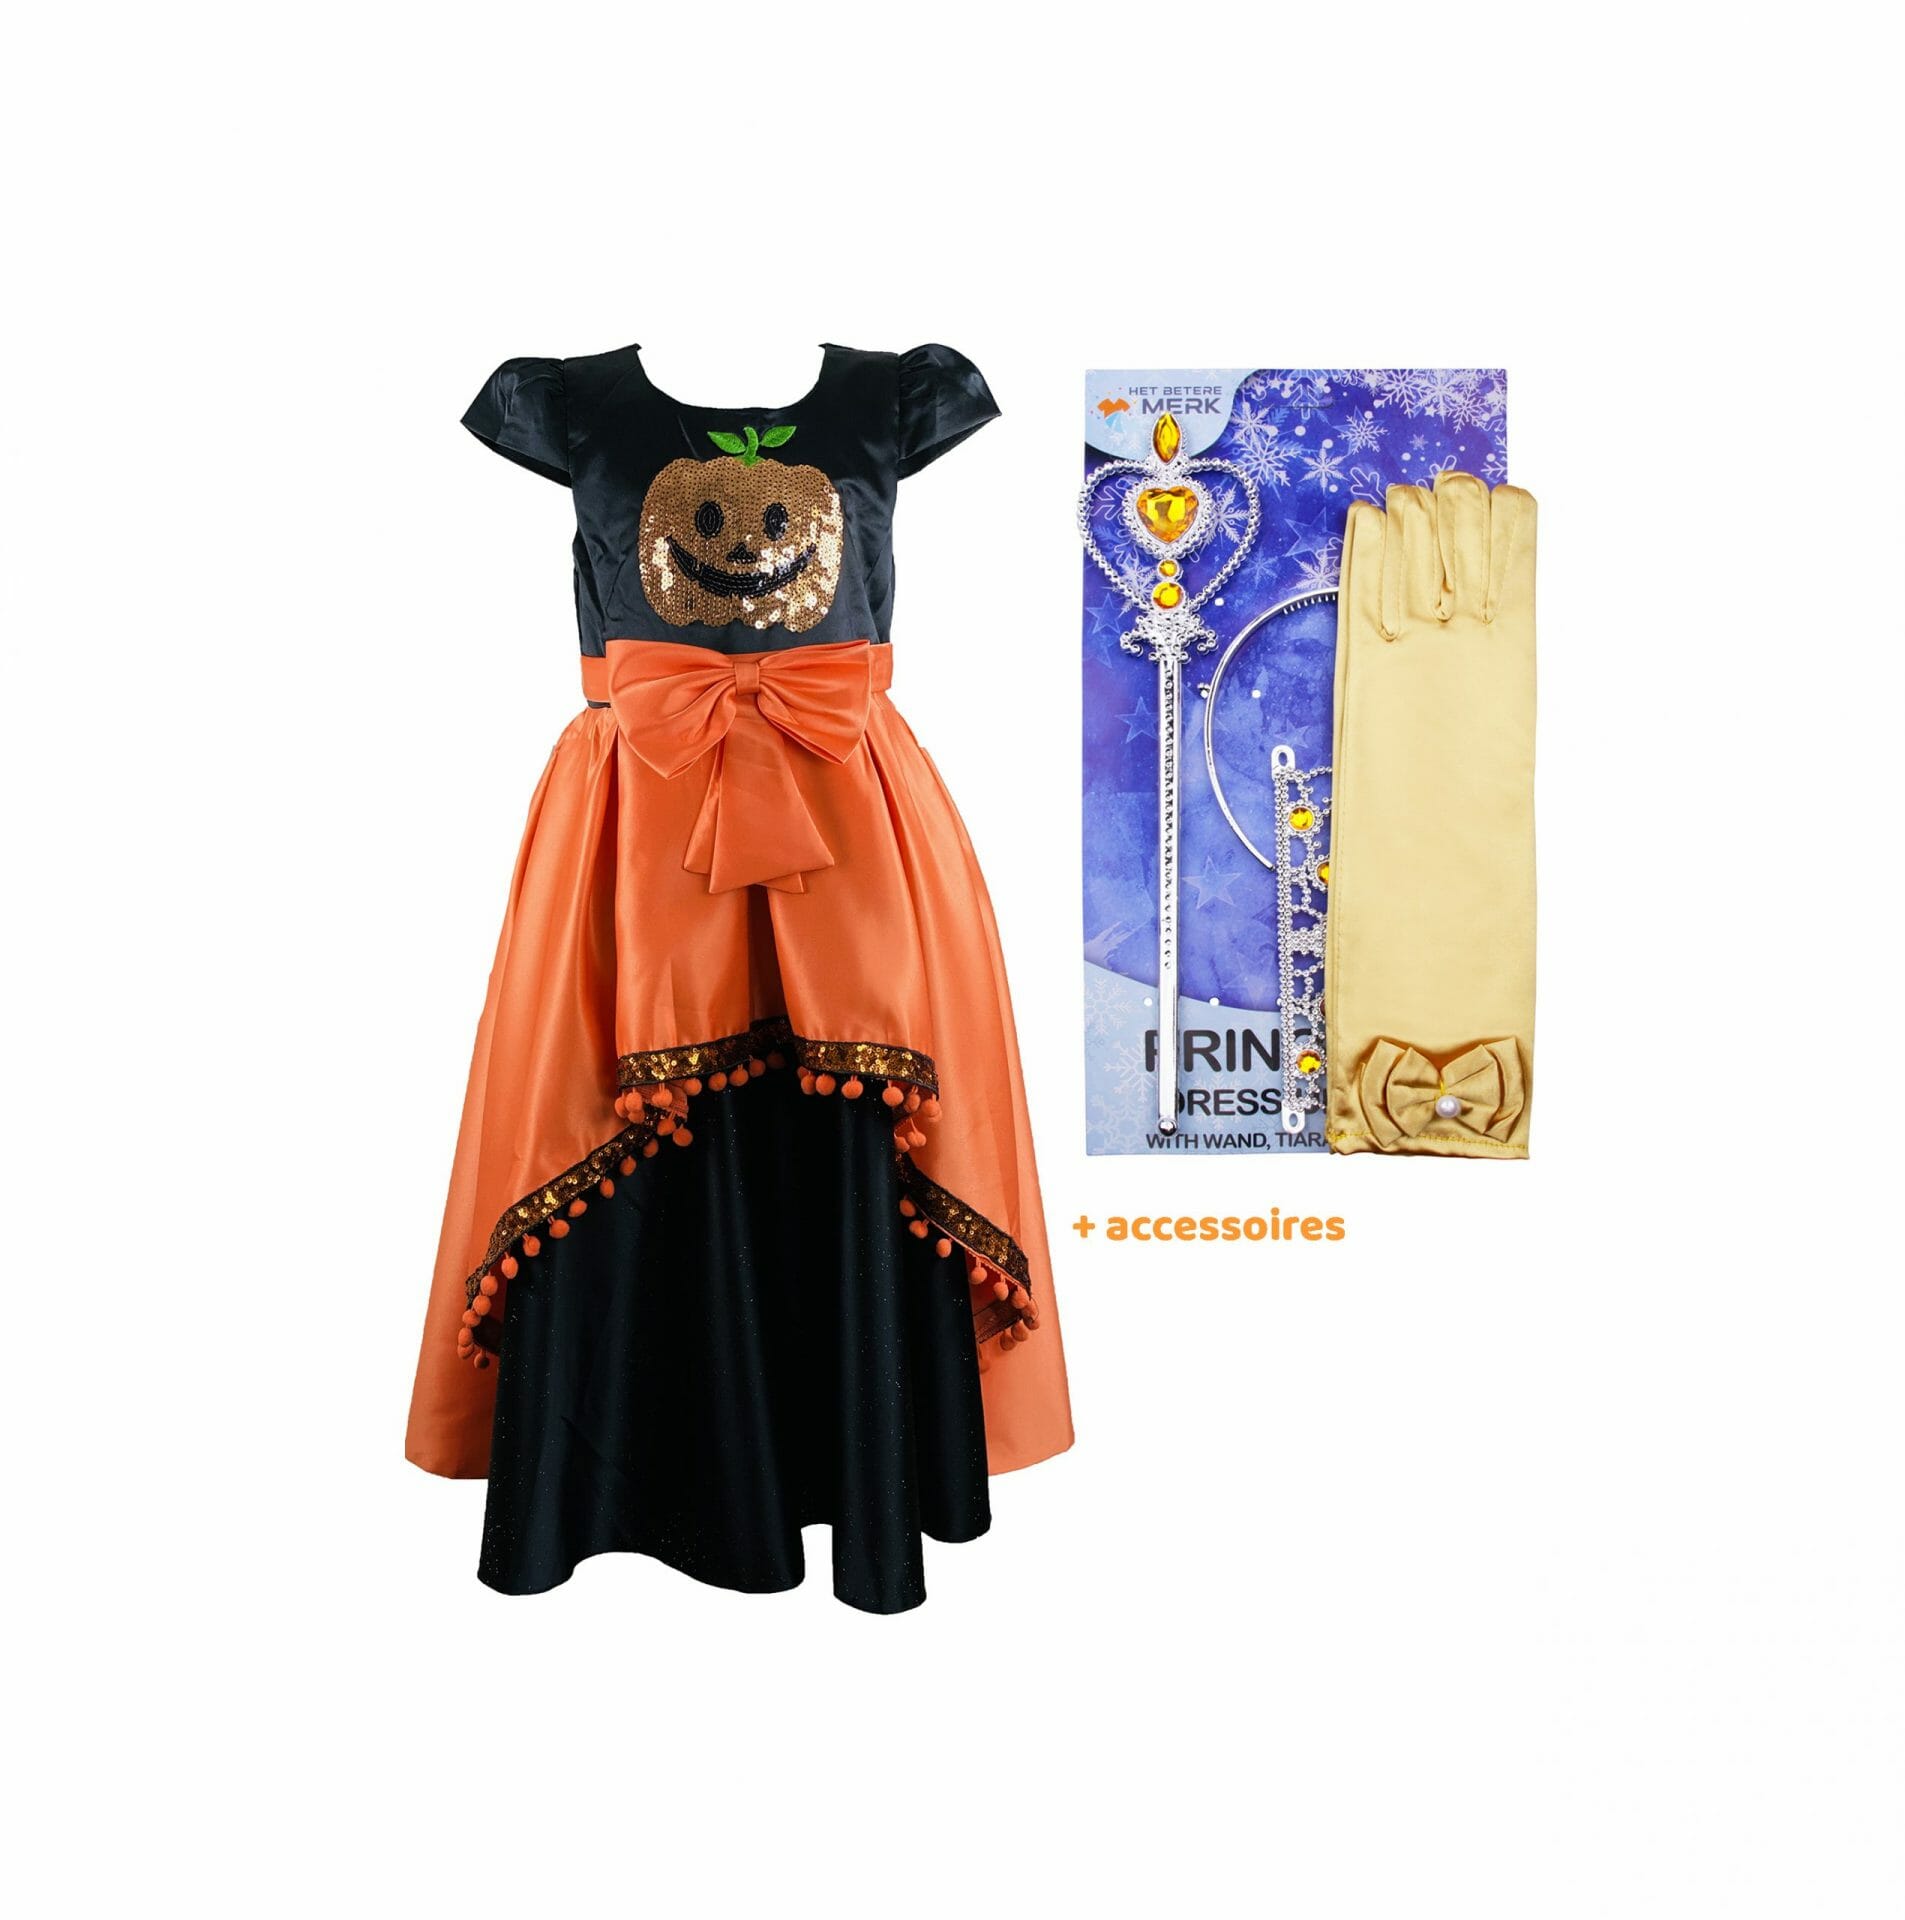 ontgrendelen Cilia Zuidoost Halloween Jurk Zwart Oranje | Halloween Kostuum |Verkleedkleren Meisje